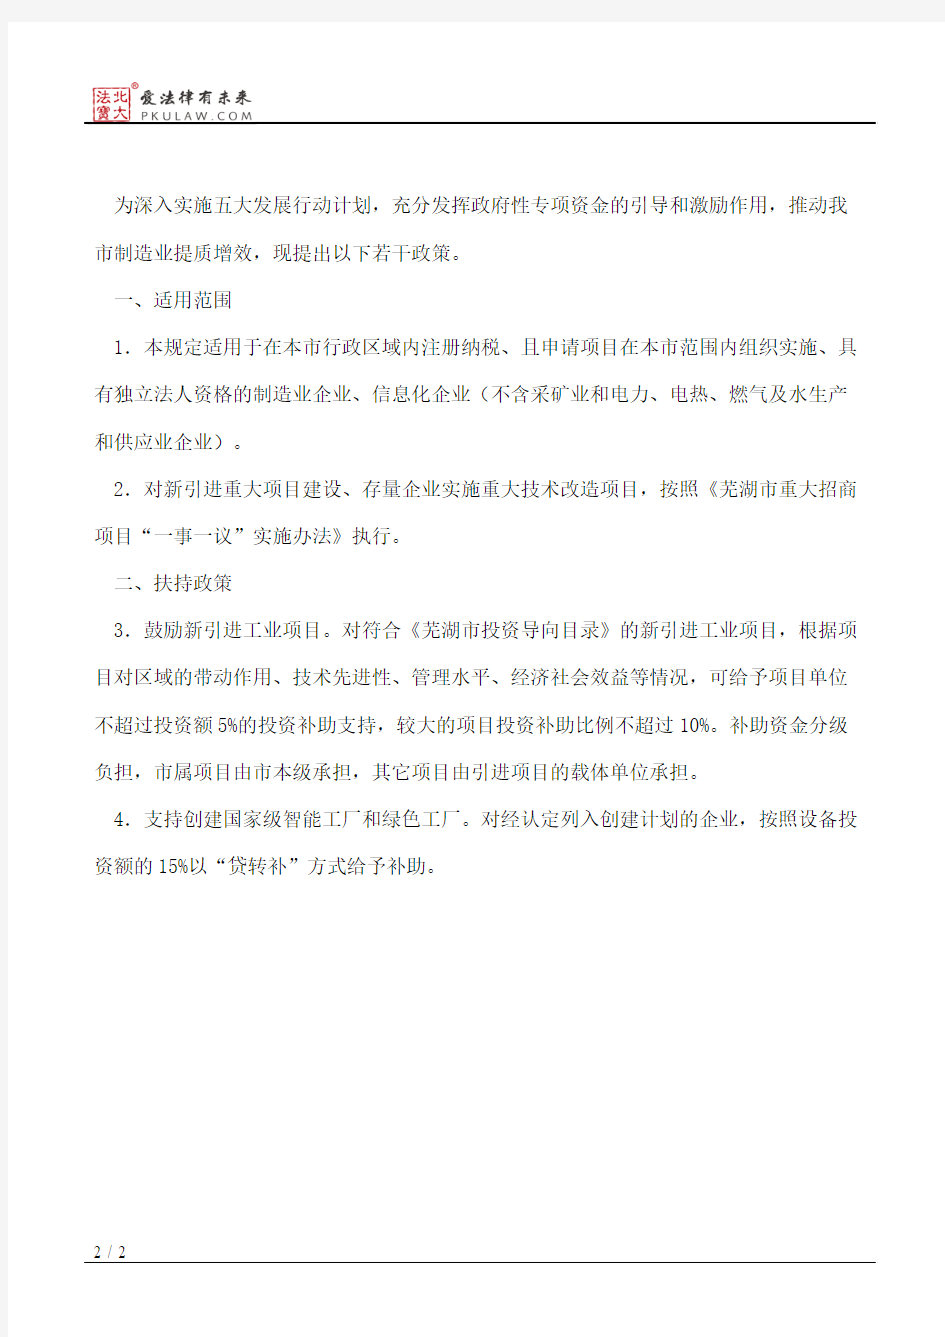 芜湖市人民政府办公室关于印发芜湖市促进新型工业化若干政策规定的通知